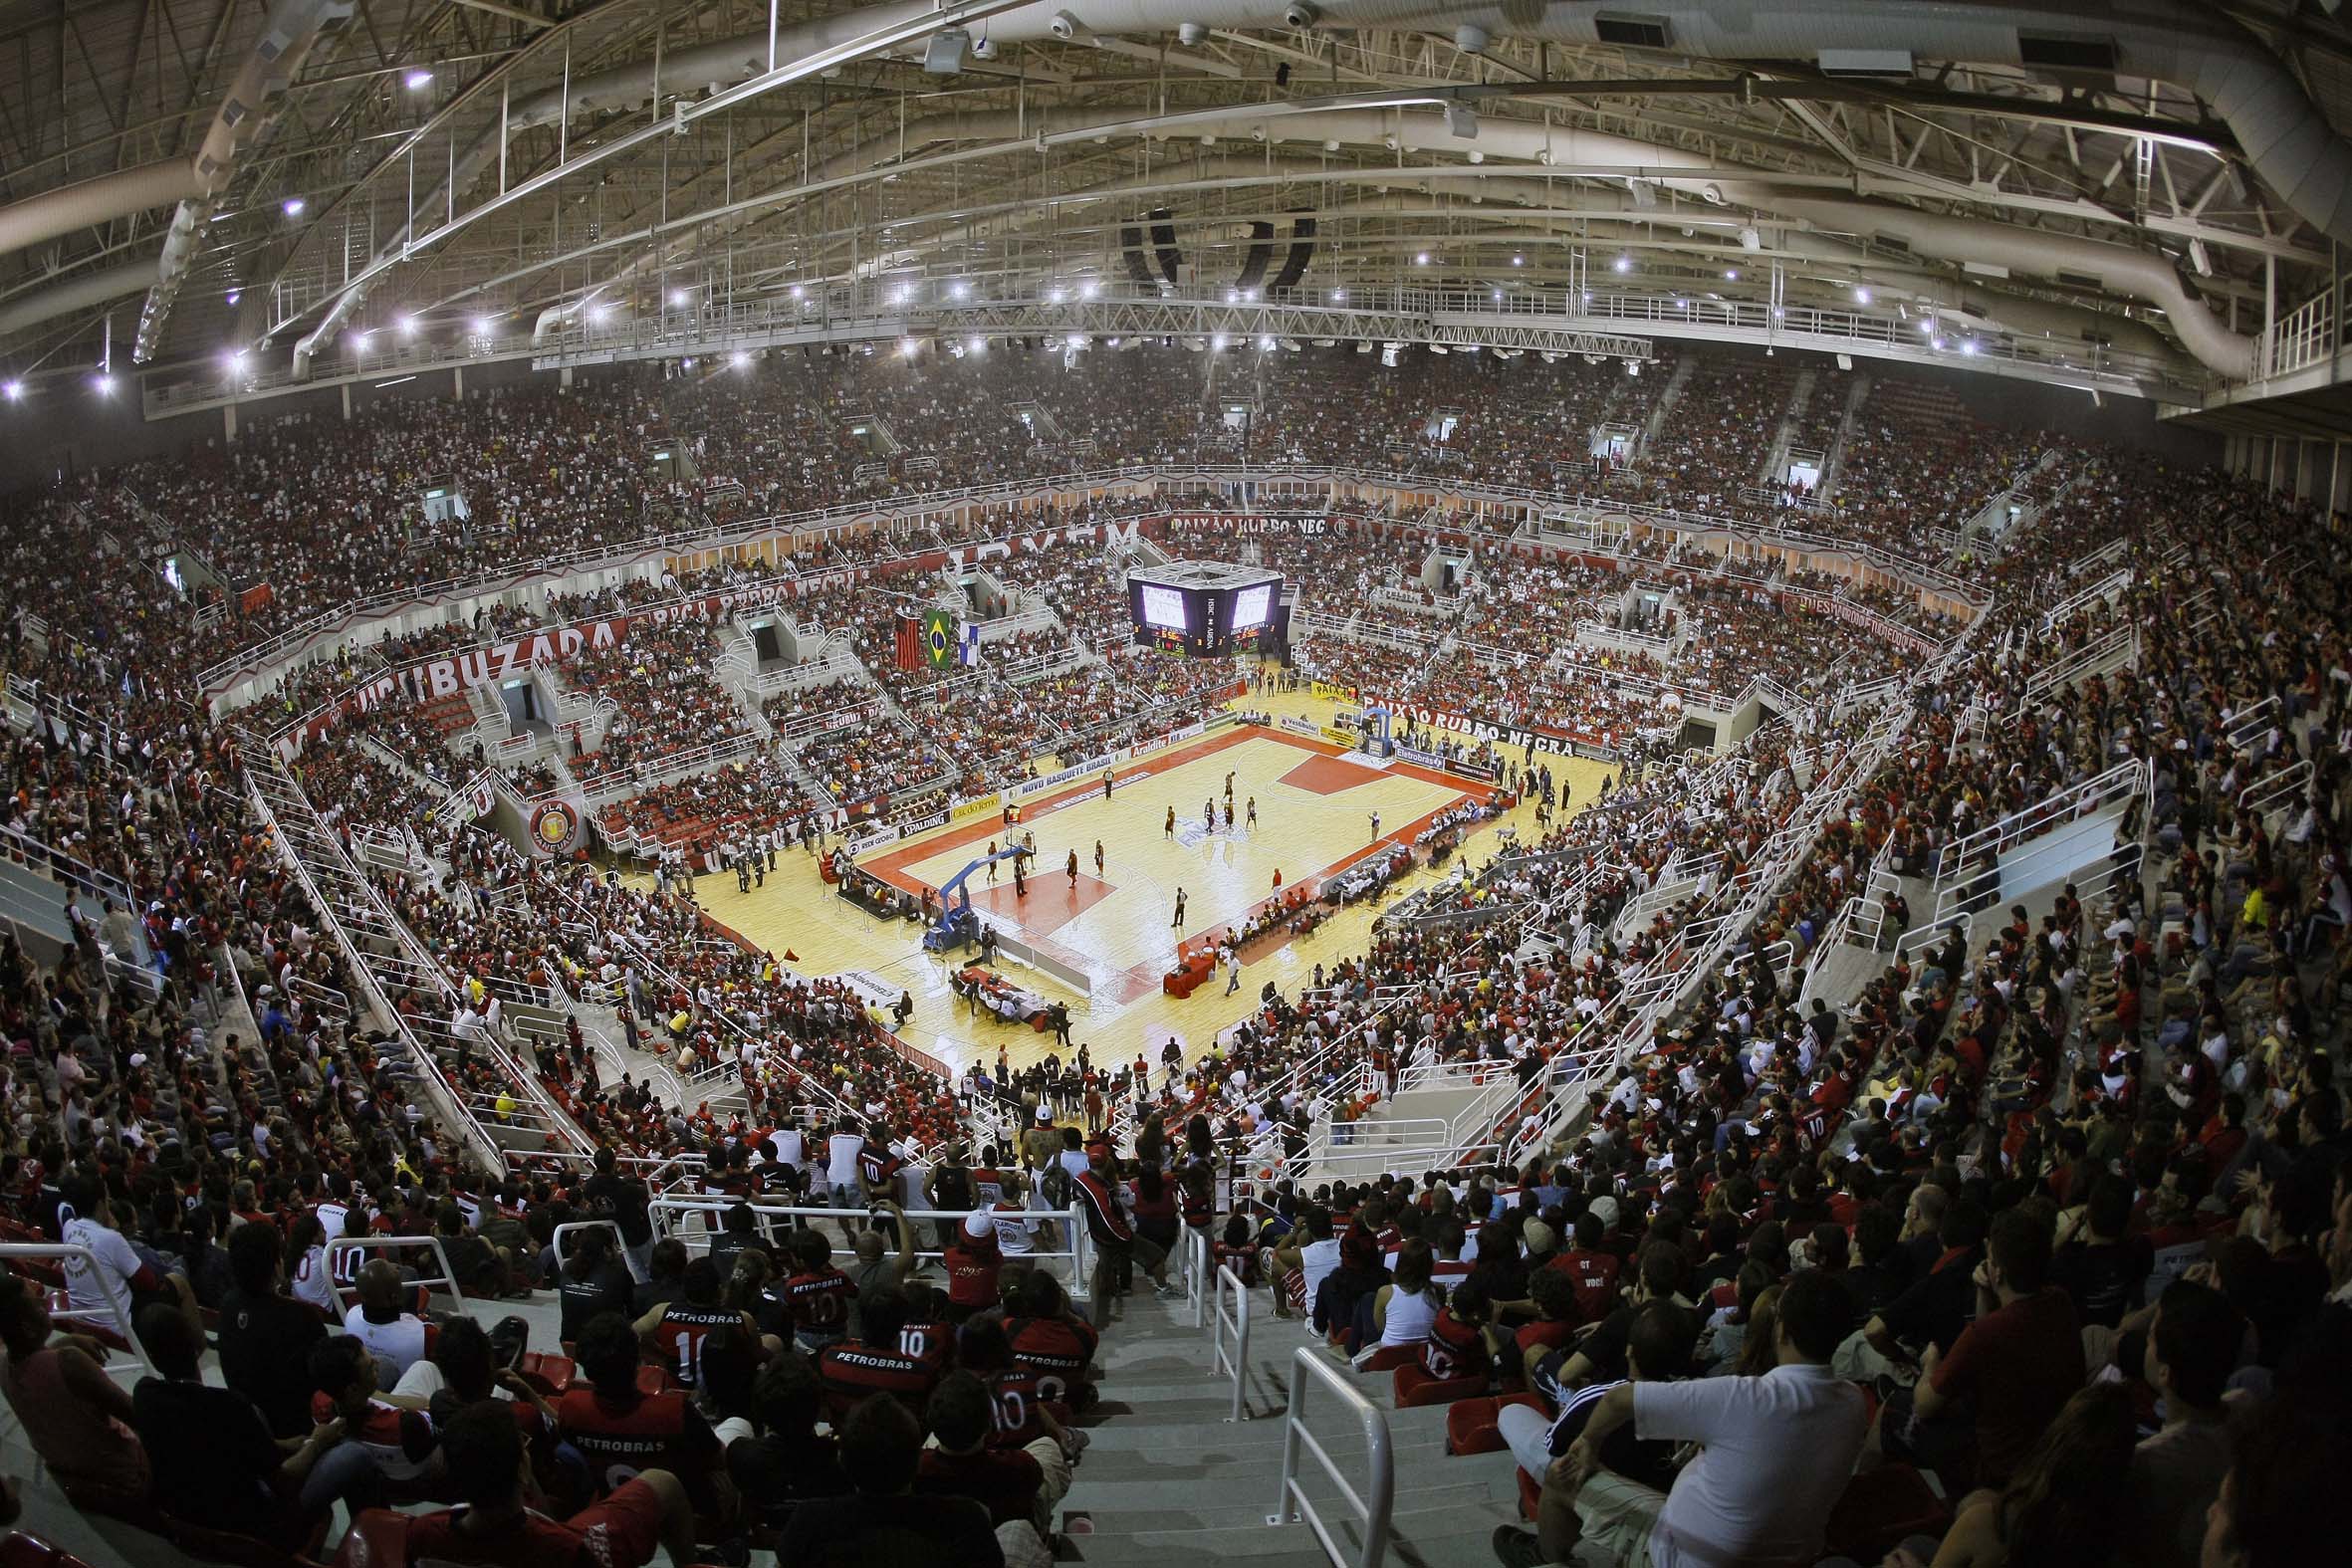 Palco das decisões dos dois últimos NBB's, HSBC Arena receberá o Mundial de Clubes (João Pires/LNB)